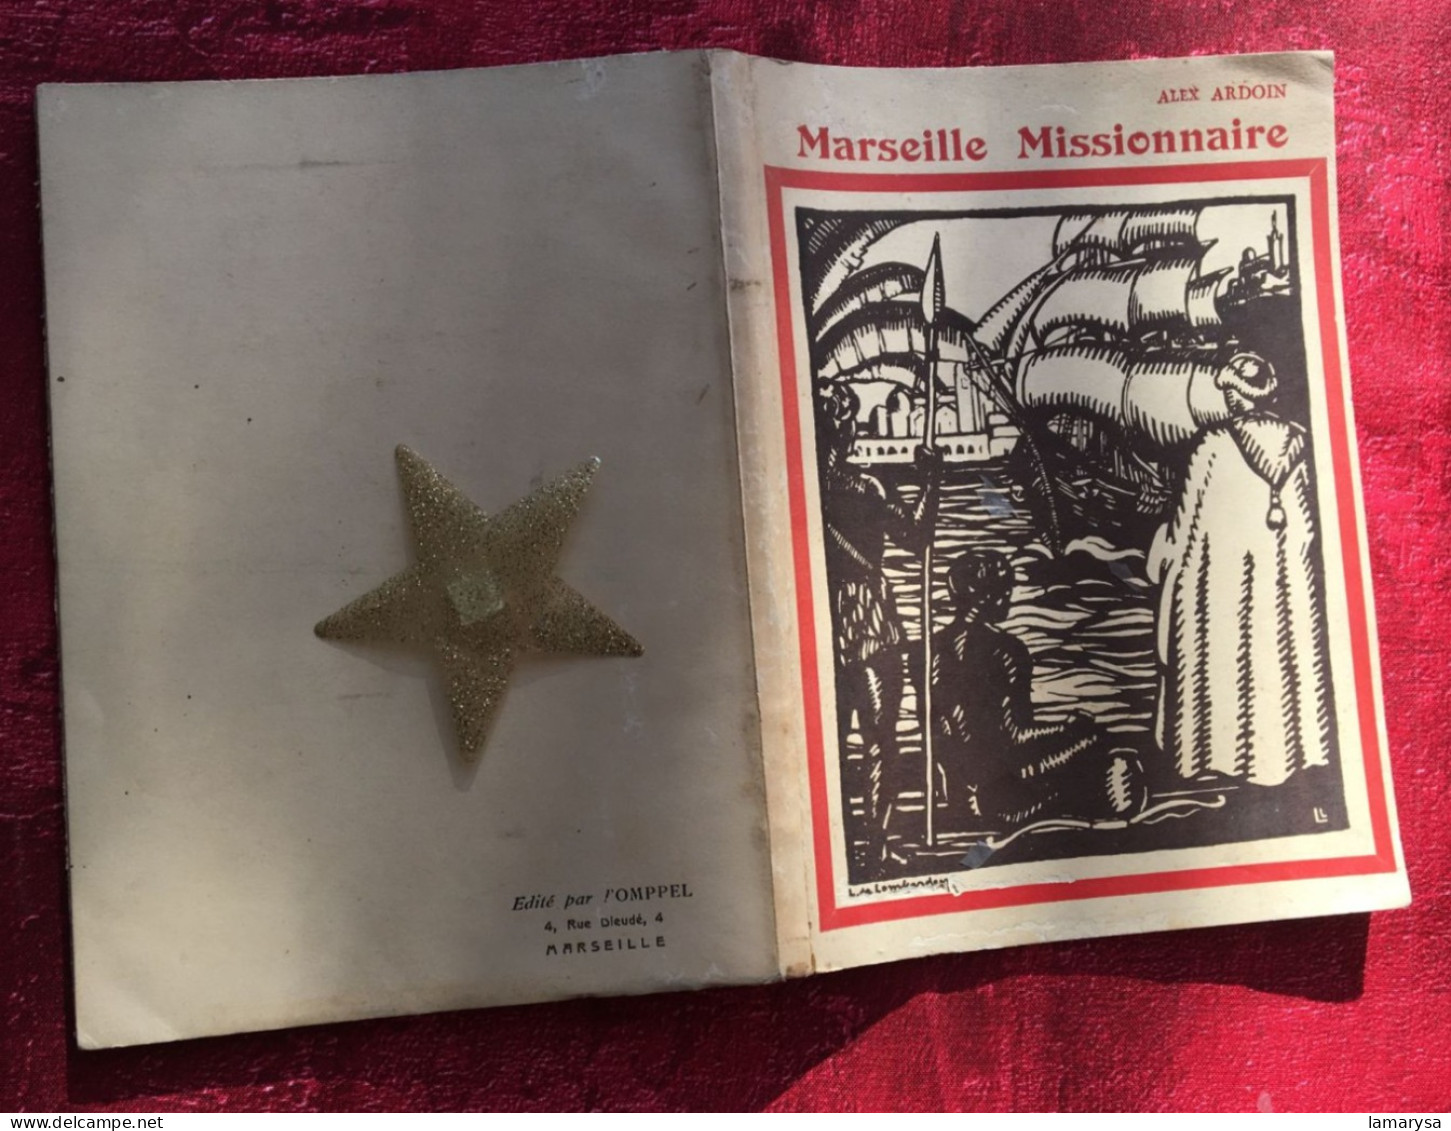 1935-Marseille Missionnaire ARDOIN (Alex)Edité Par Omppel, Diocèse- Religion- Régionalisme :Des Origines à La Révolution - Provence - Alpes-du-Sud